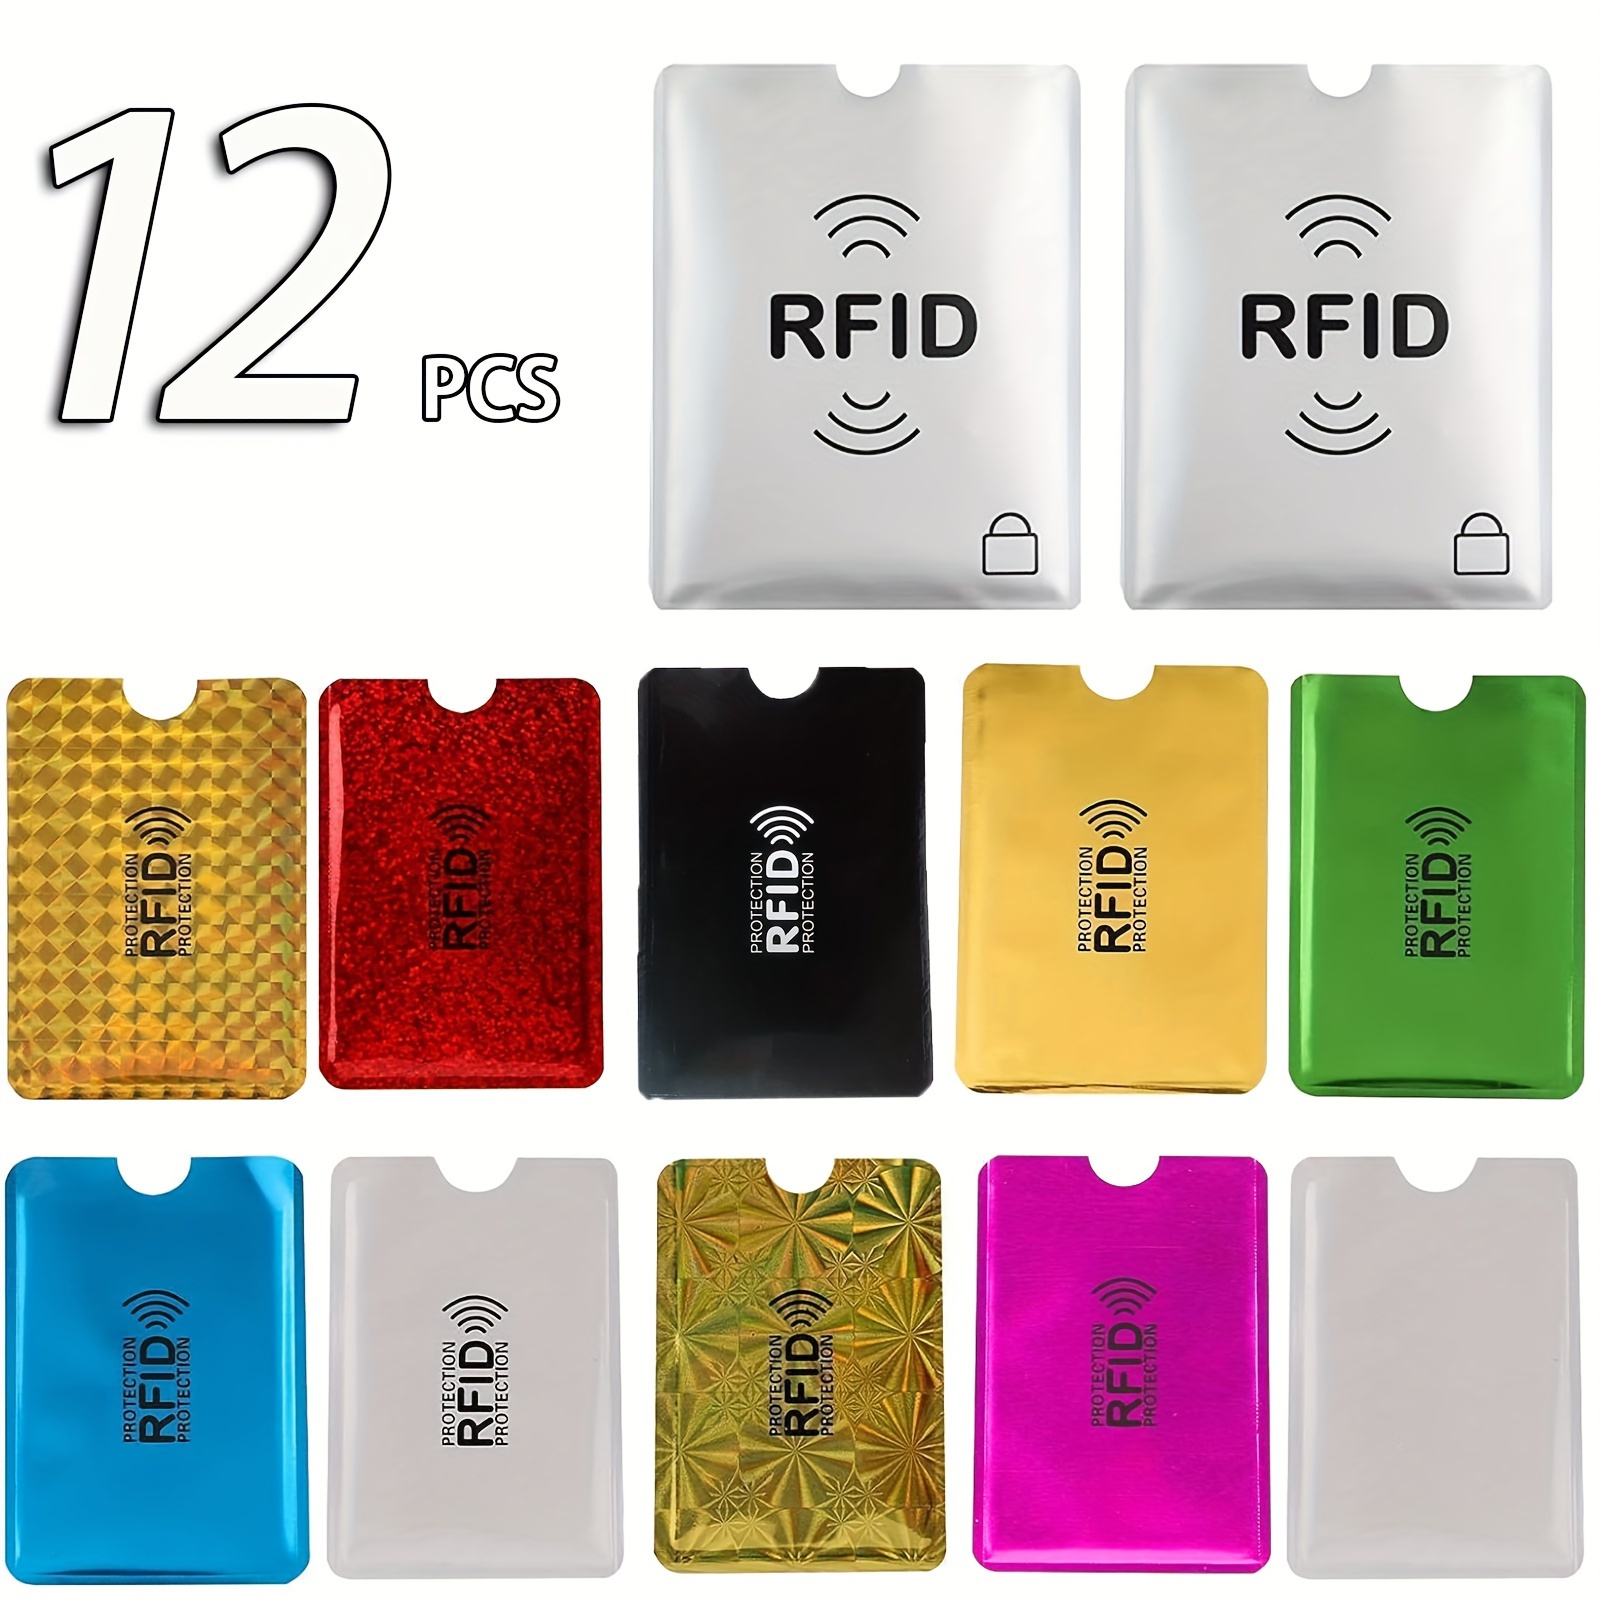 

12pcs Rfid Blocking Sleeves(10 Credit Card Holders & 2 Passport Protectors) Credit Card Protector, Rfid Blocking Sleeves, Waterproof Aluminum Foil Slim Design Wallet